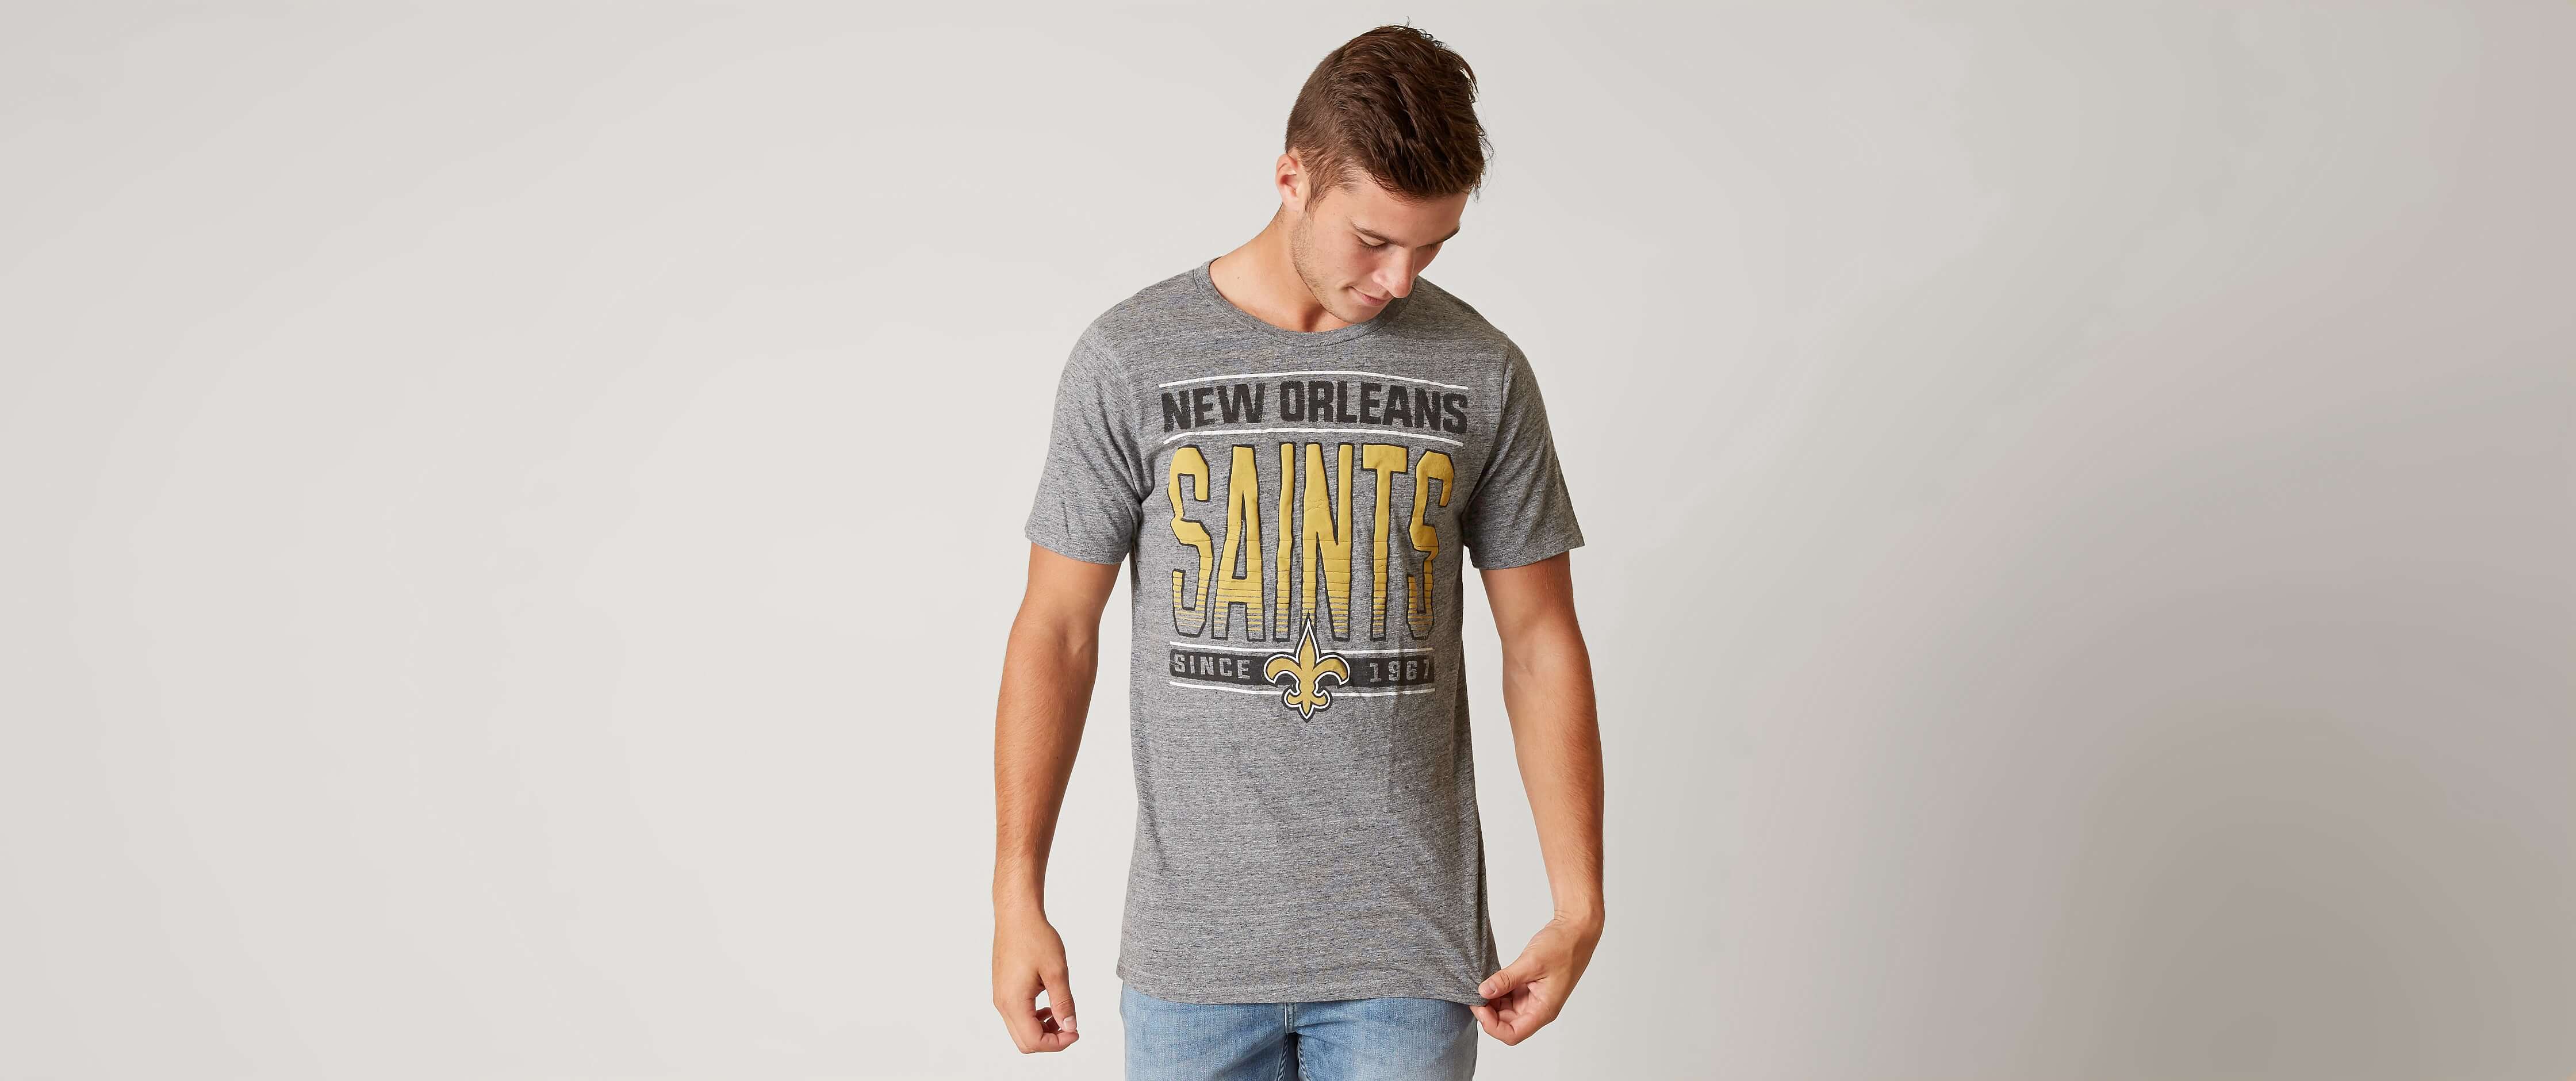 new orleans saints t shirts